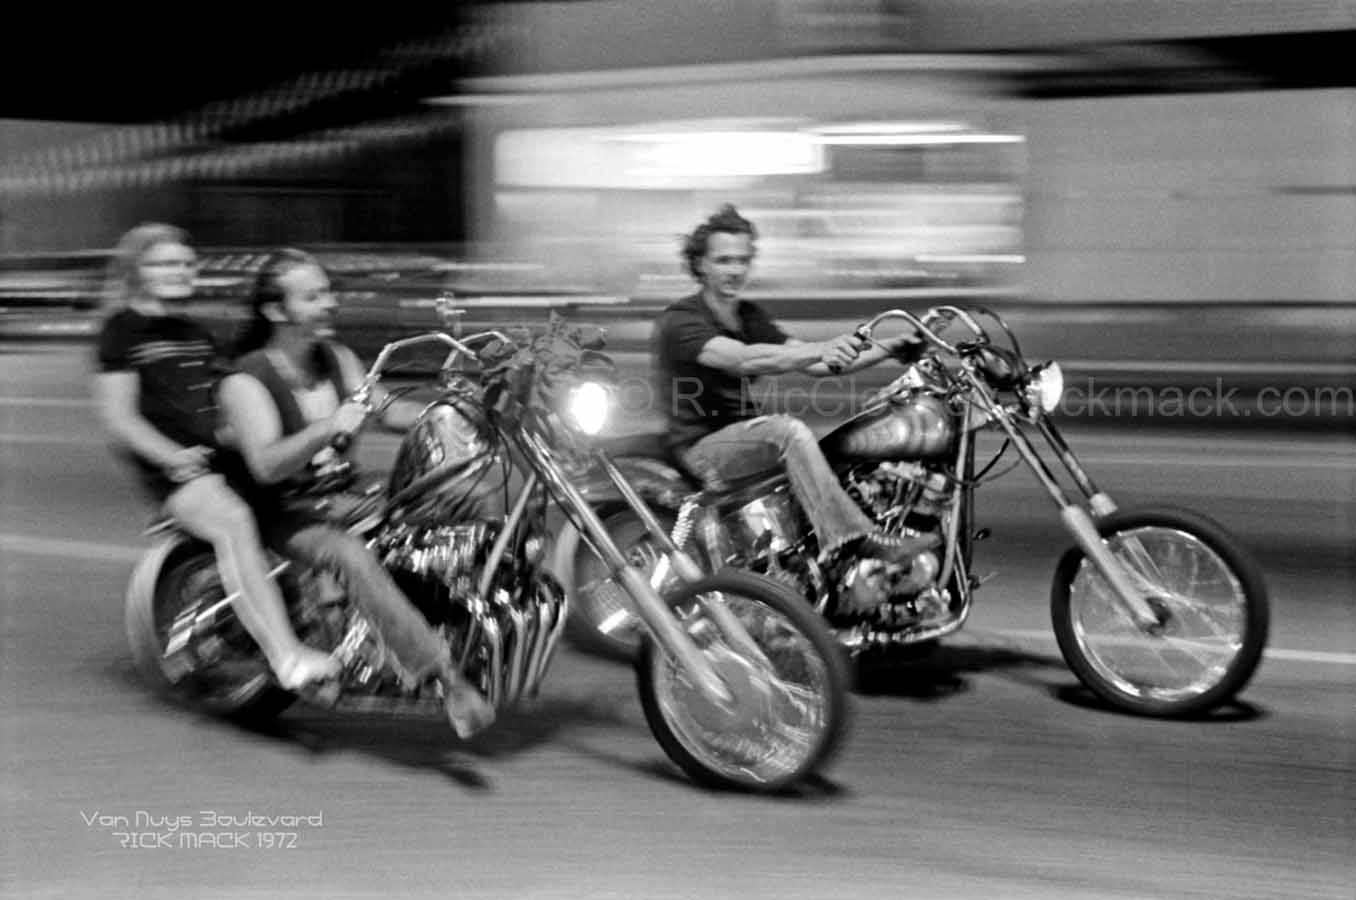 rick mccloskey; van nuys boulevard 1972; motorcycles; choppers; joy riding